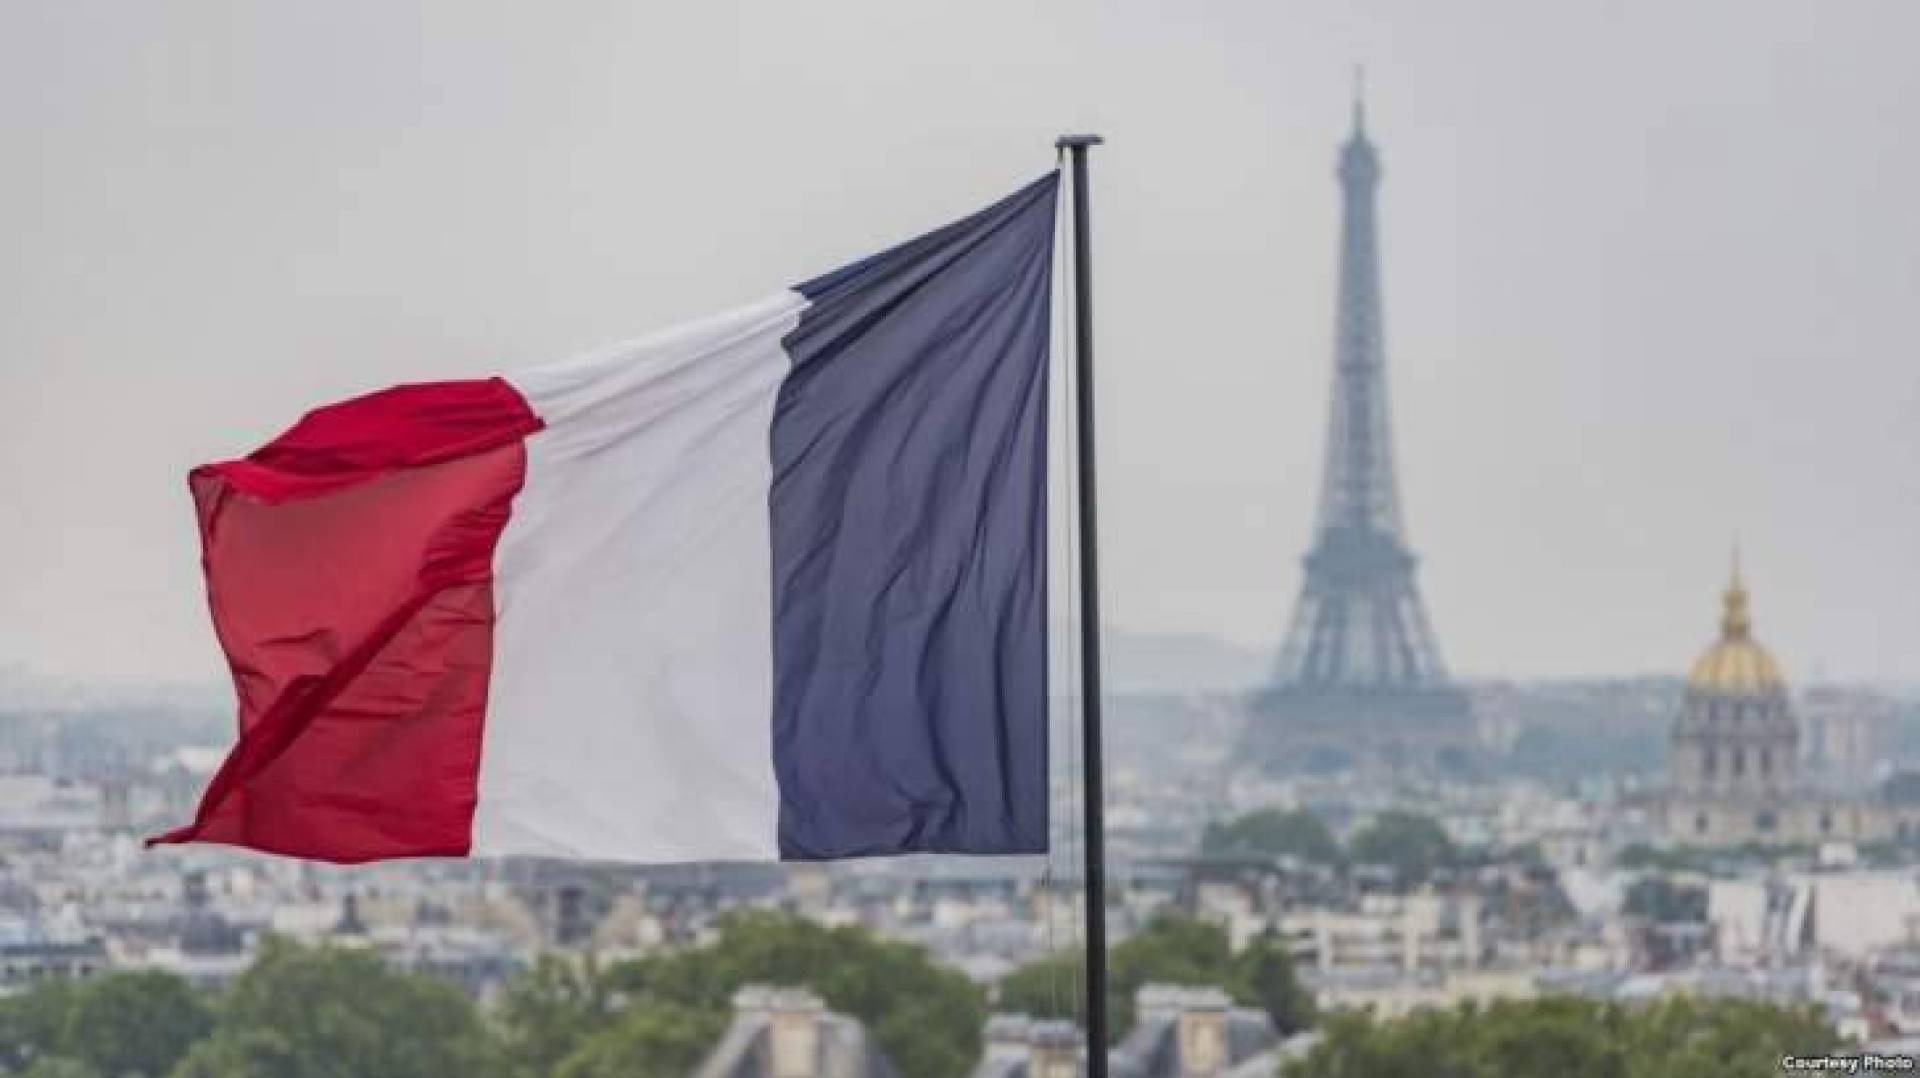 مكافحة الإرهاب ـ هل دفعت "لافارج" الفرنسية إتاوات لداعش؟